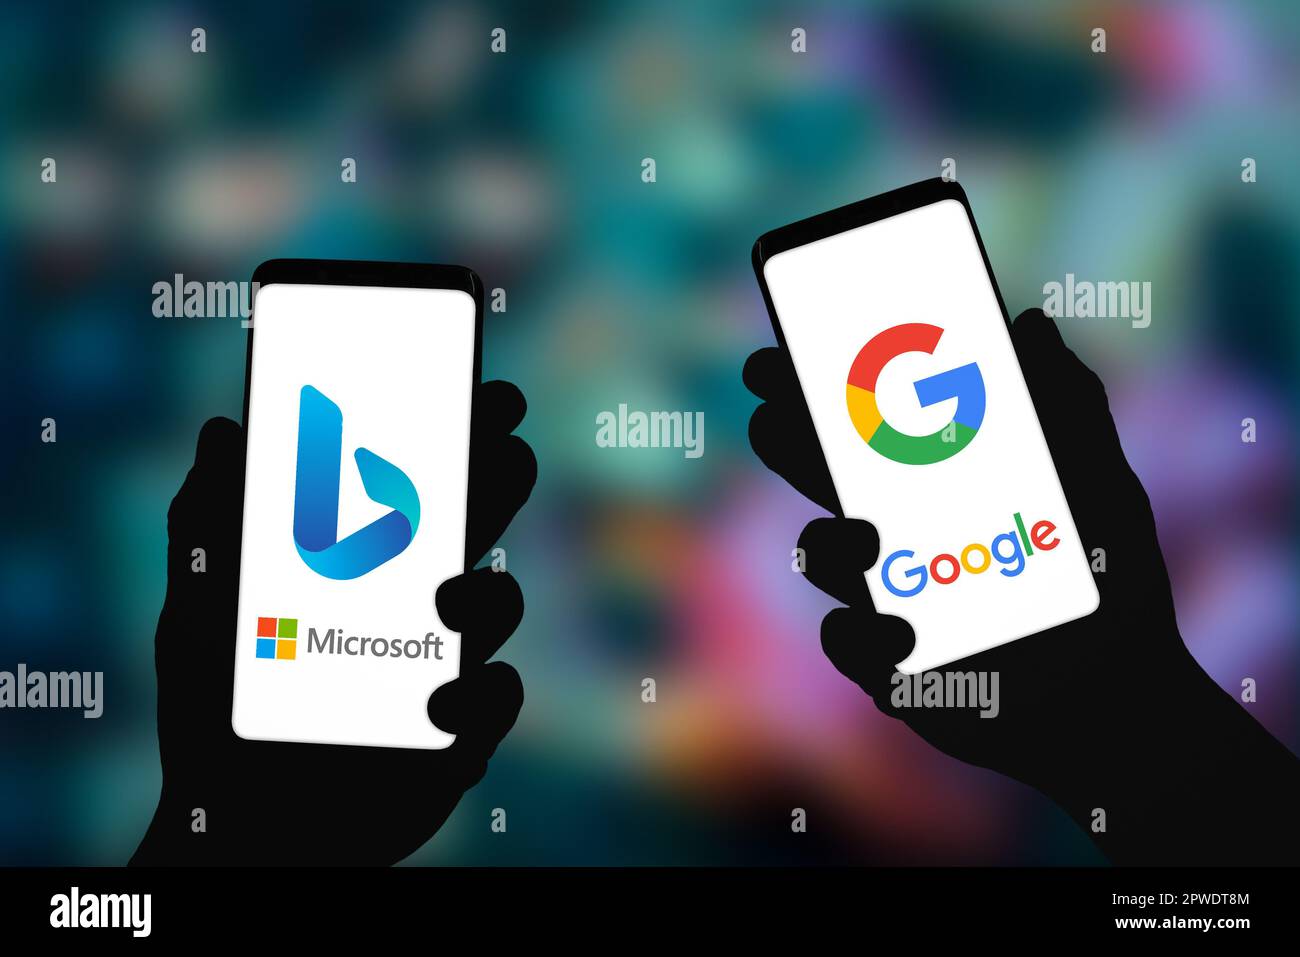 L'application Microsoft Bing et Google s'affiche sur le smartphone Banque D'Images